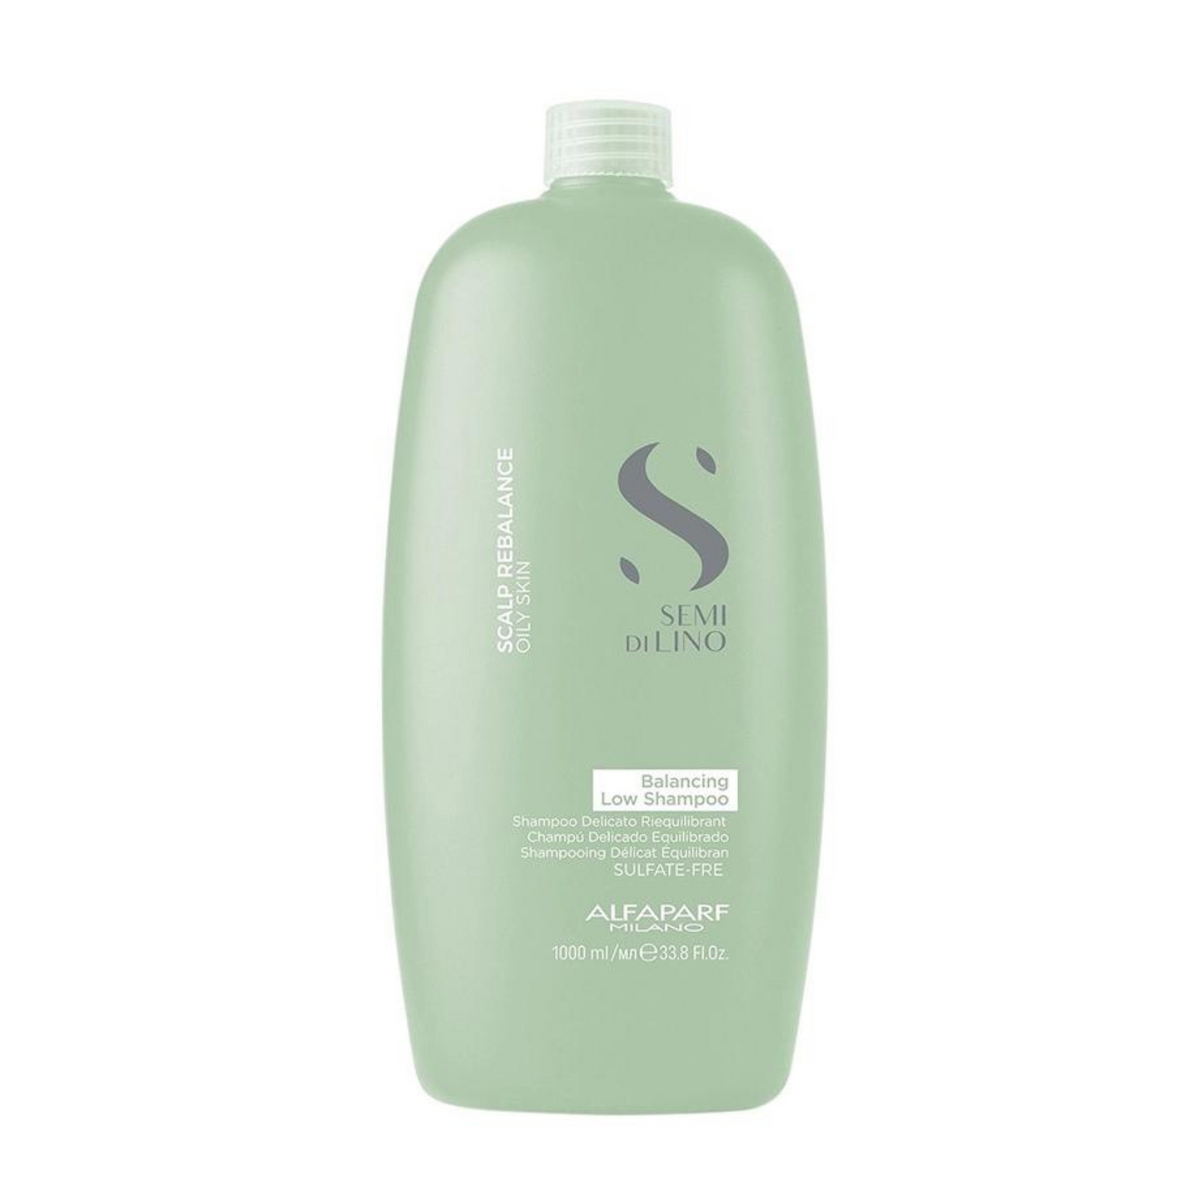 Sampon de echilibrare anti-sebum 1000 ml Scalp Rebalansing Balancing Low Shampoo - Alfaparf